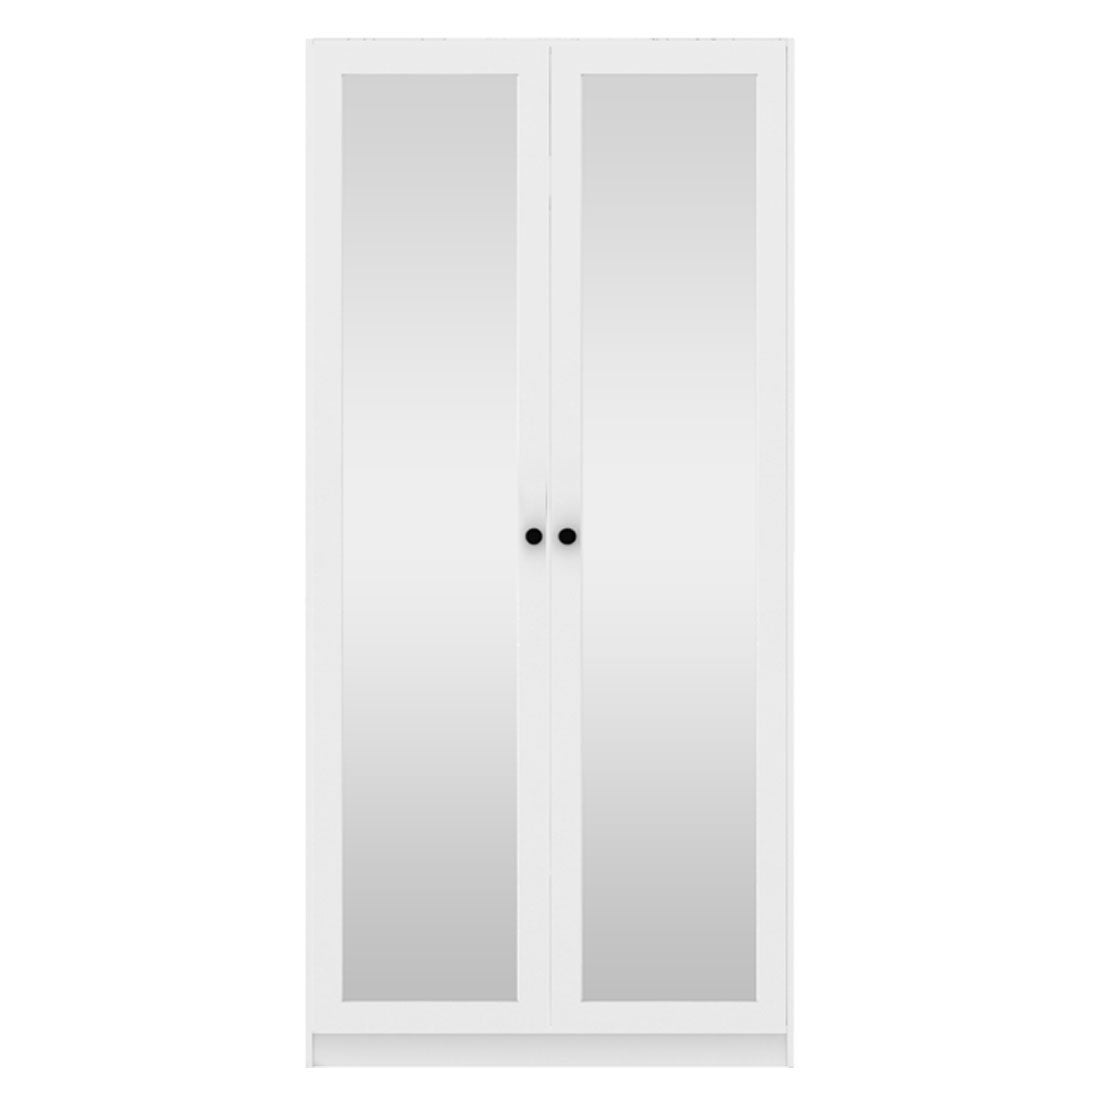 ตู้เสื้อผ้า ชั้นเก็บของ OP-C ขนาด 100 ซม. รุ่น Blox สีขาว&กระจกเงา1